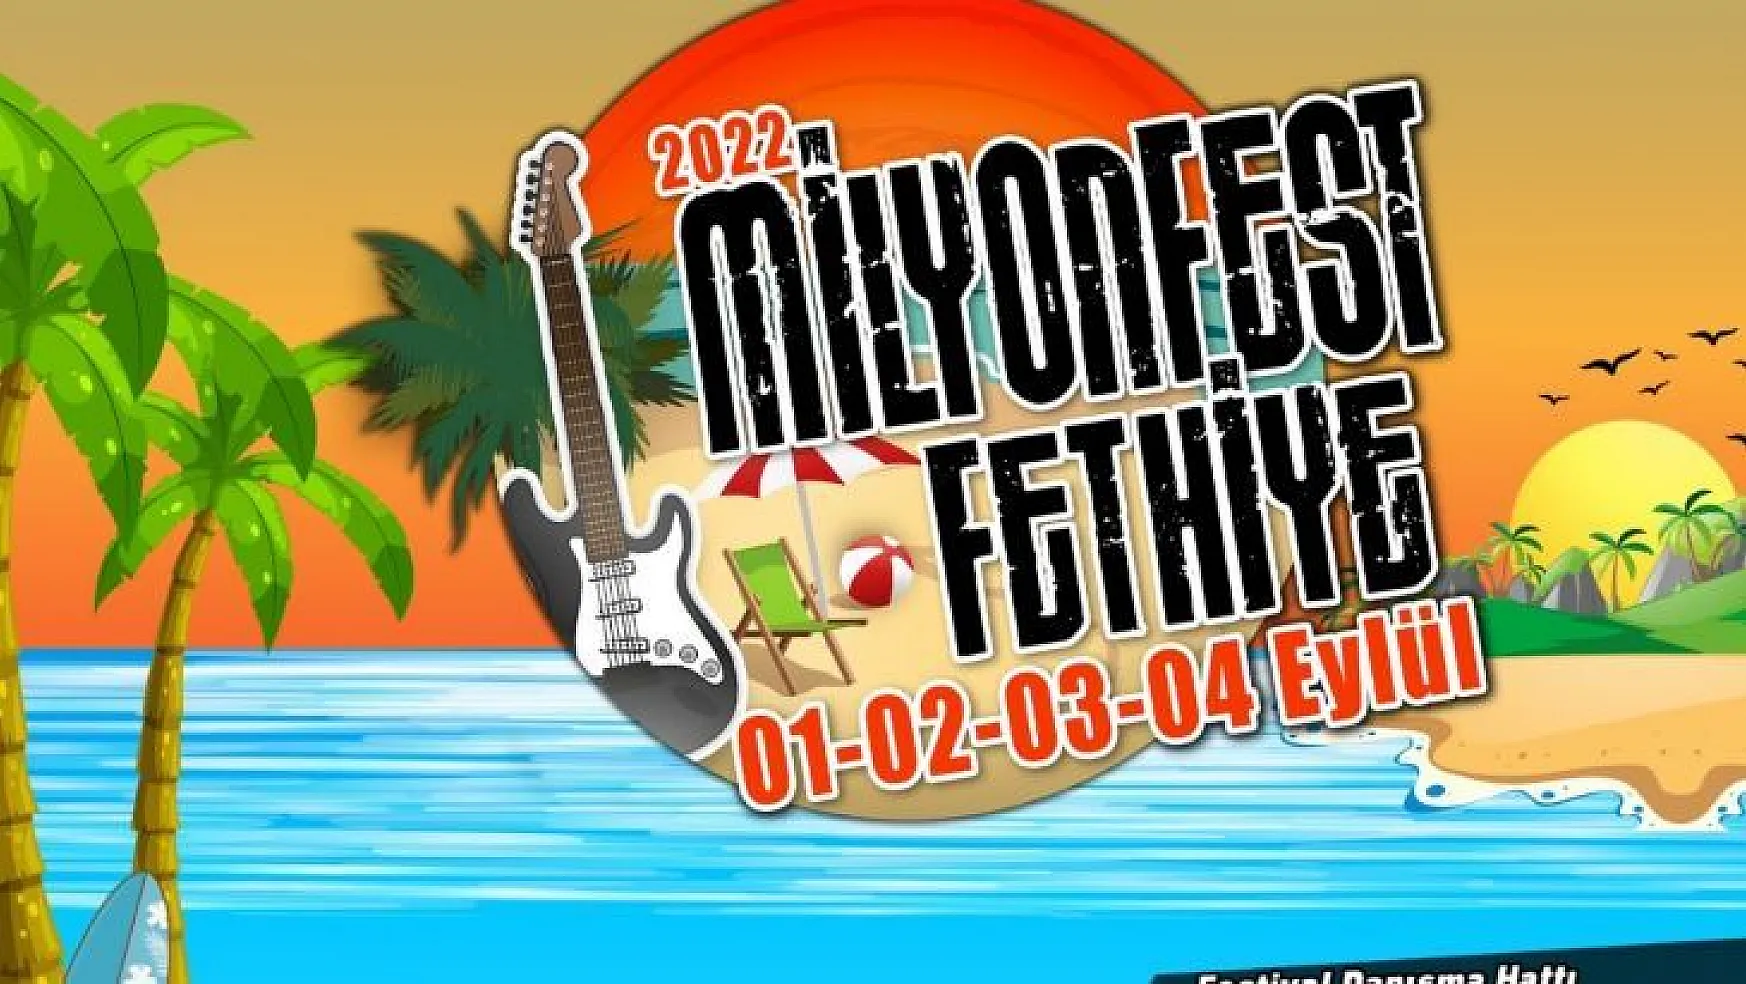 Milyonfest Fethiye'nin tarihleri belli oldu